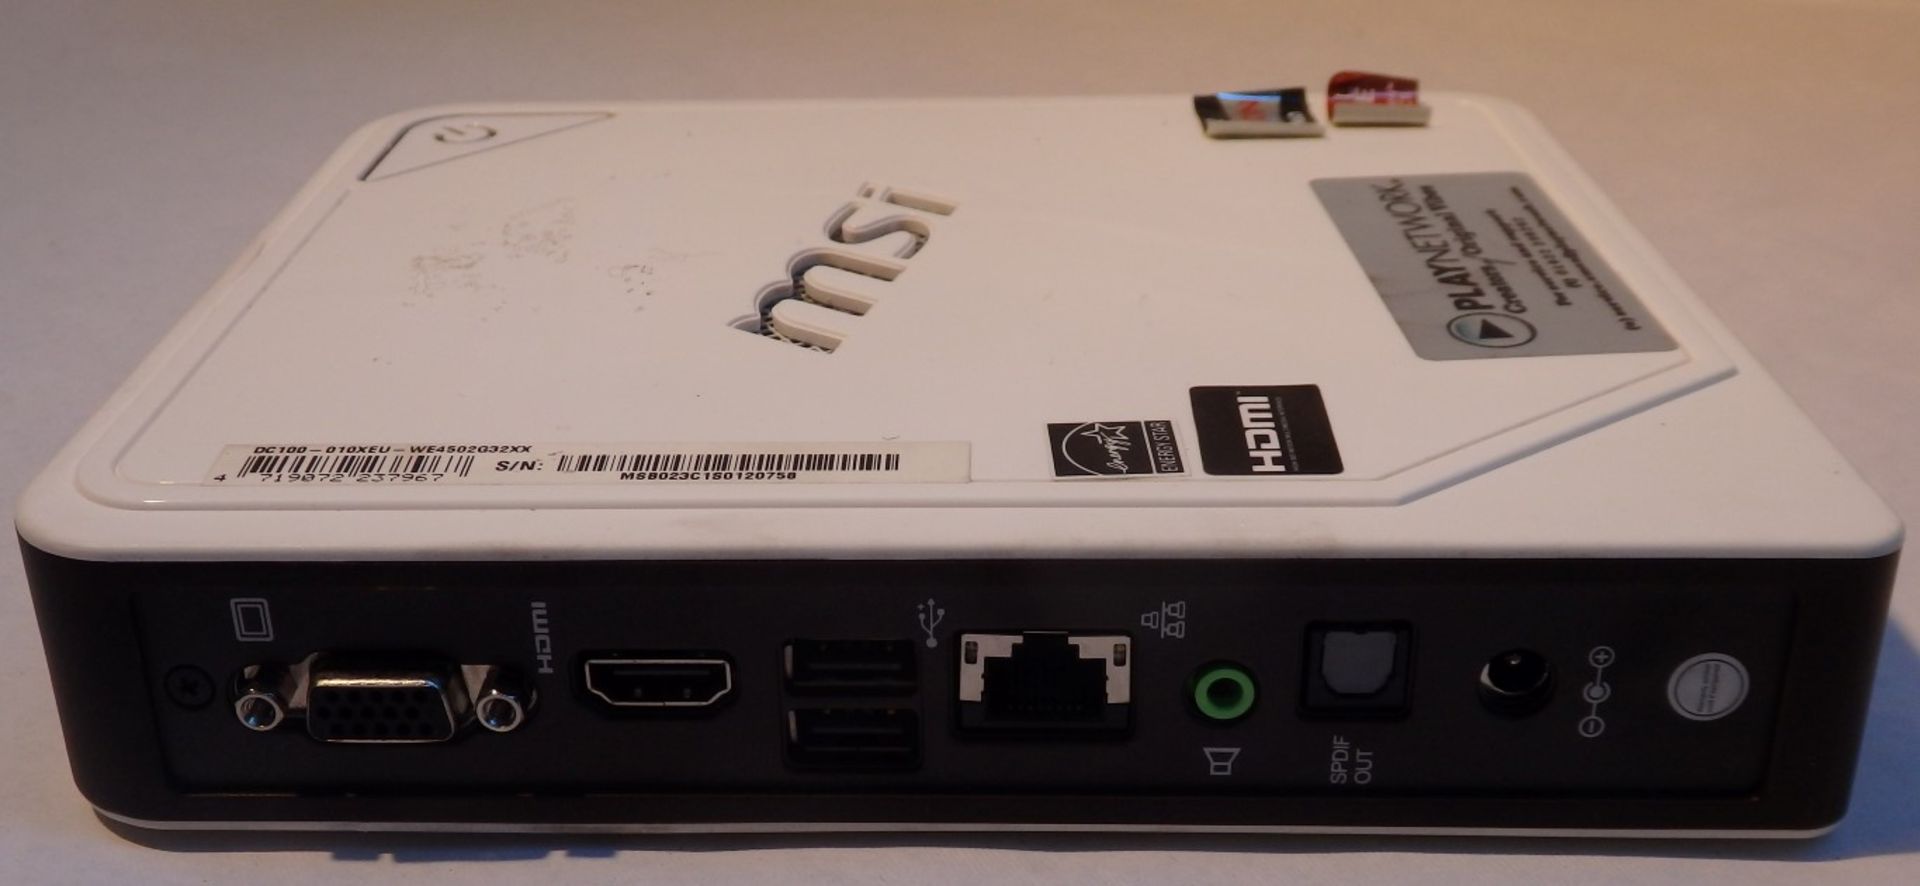 1 x MSI Wind Box DC100 Mini PC Computer – Model : MS-B023 - AMD Brazos Dual Core E-450 (1.65GHz) - - Image 3 of 10